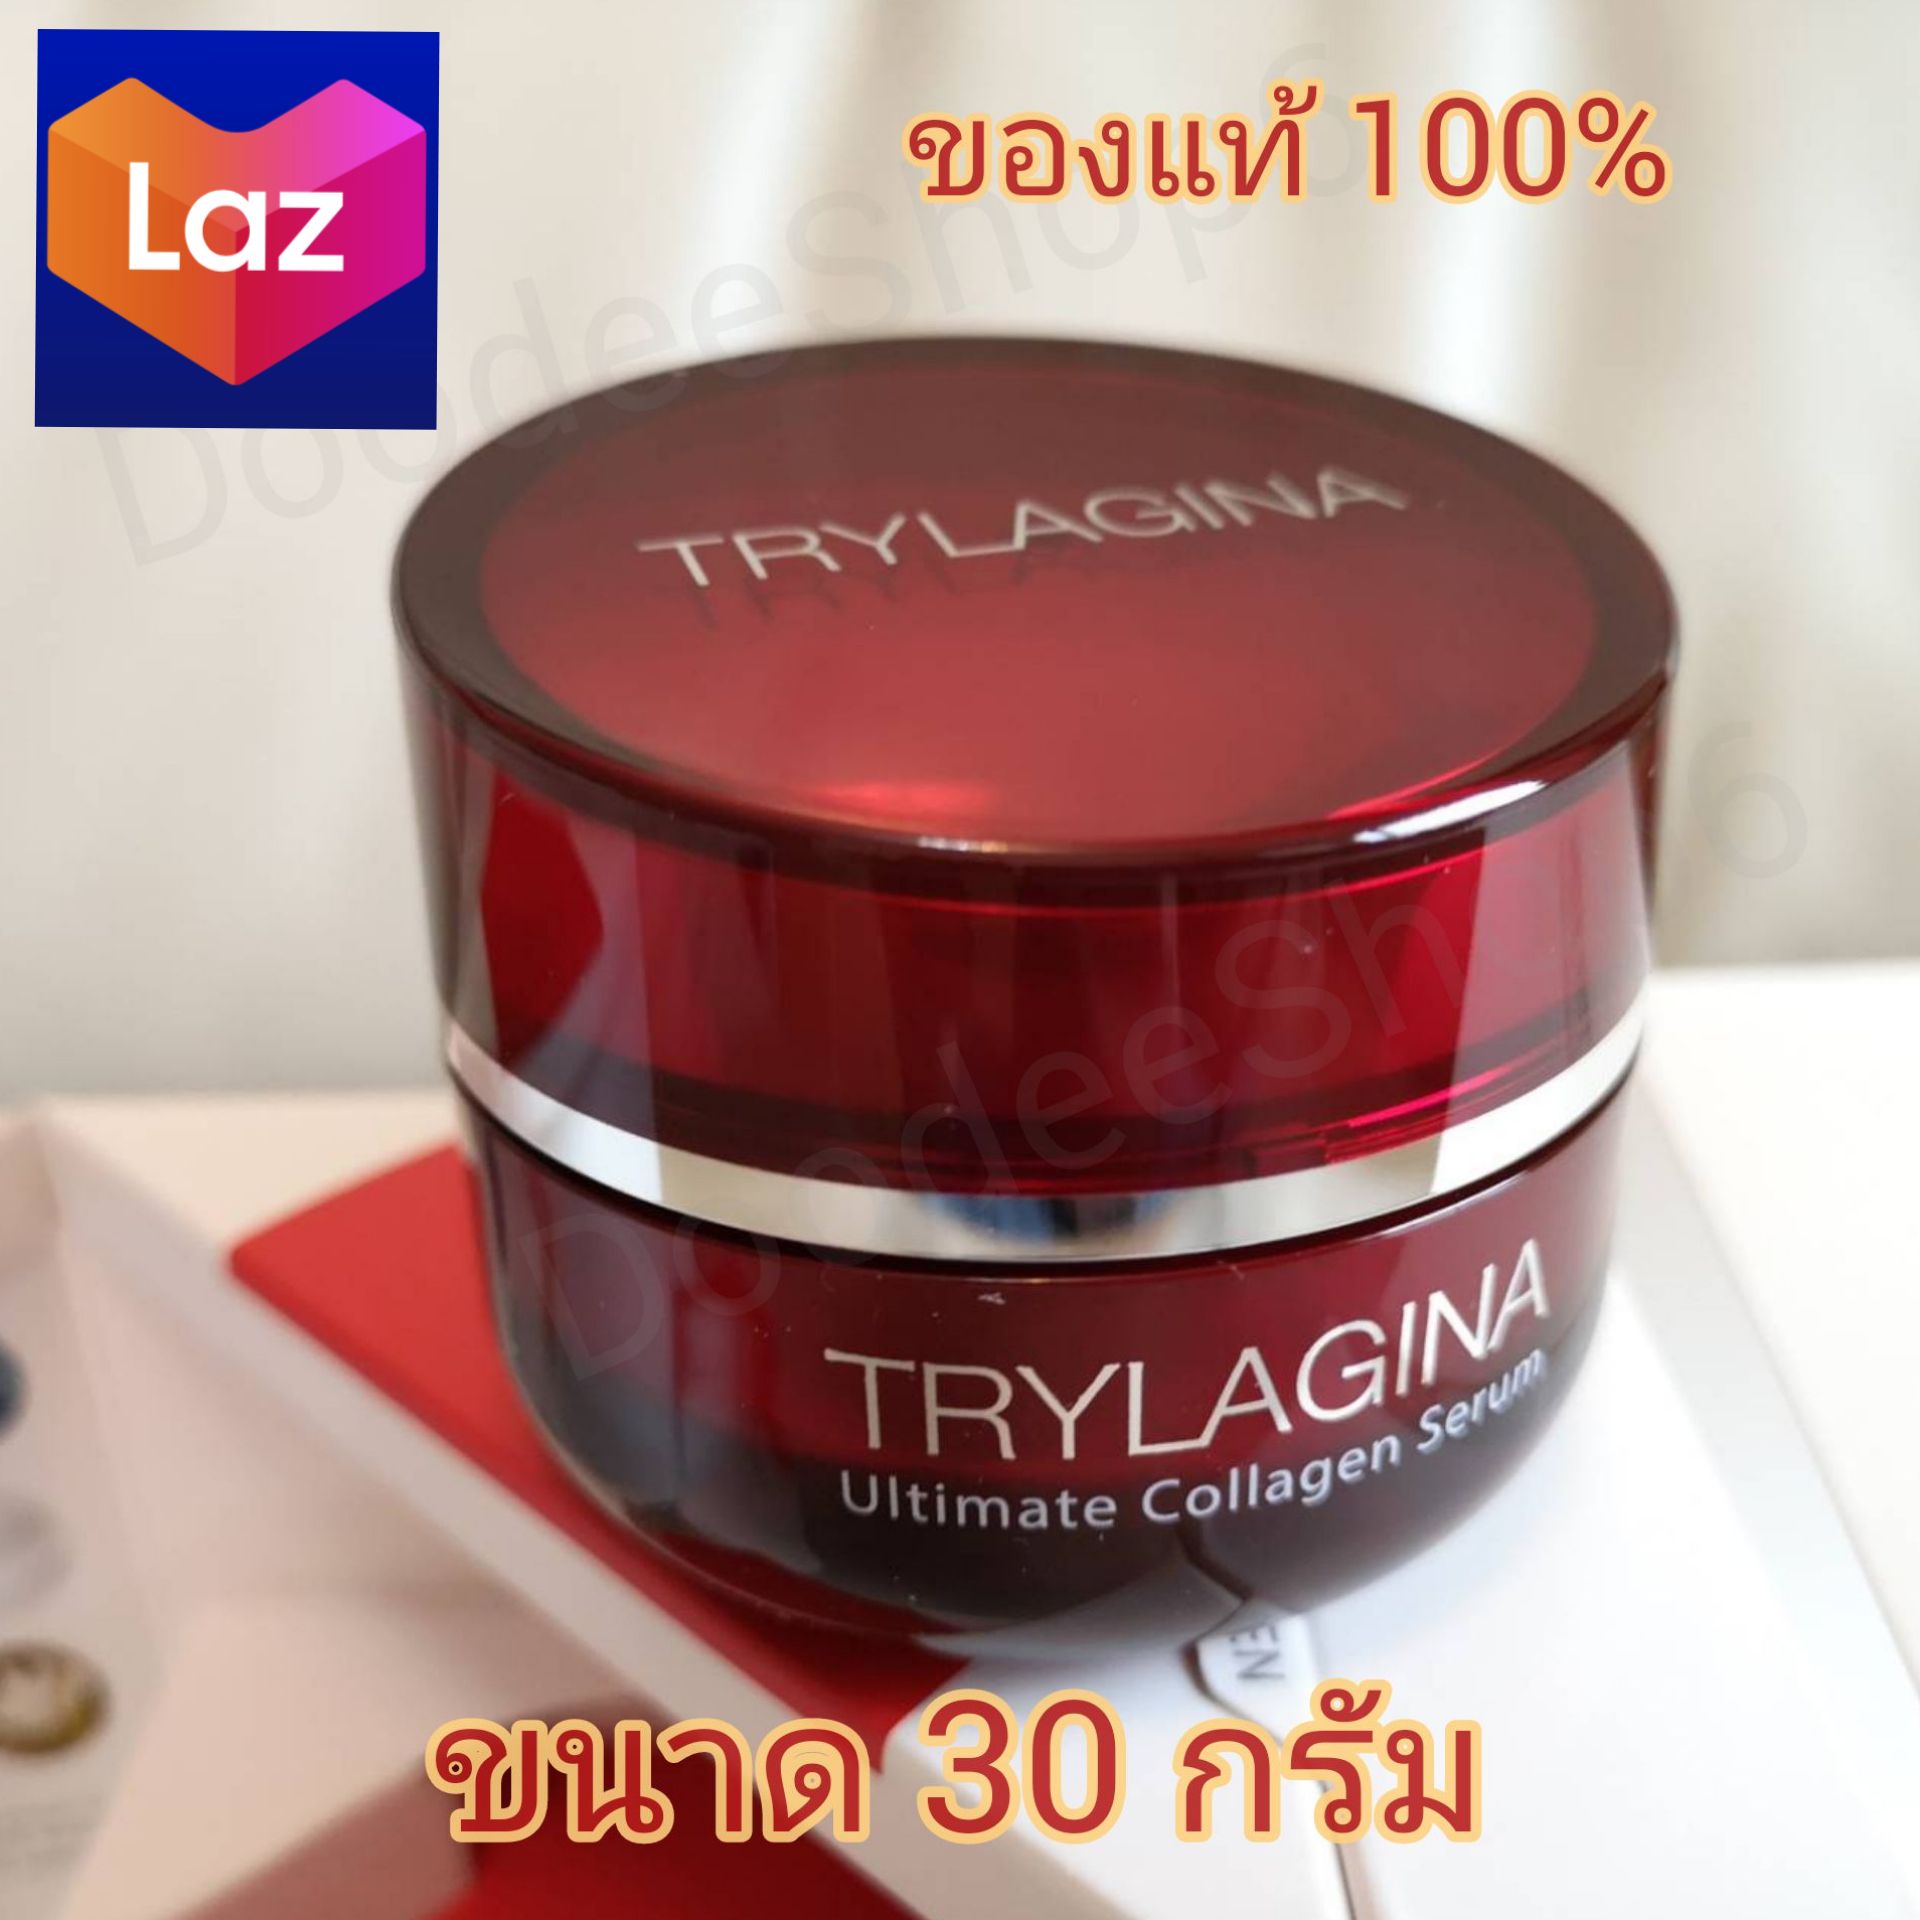 TRYLAGINA_Ultimate Collagen Serum 10X ไตรลาจีนา อัลทิเมท คอลลาเจน เซรั่ม ขนาด 30g 1 กระปุก